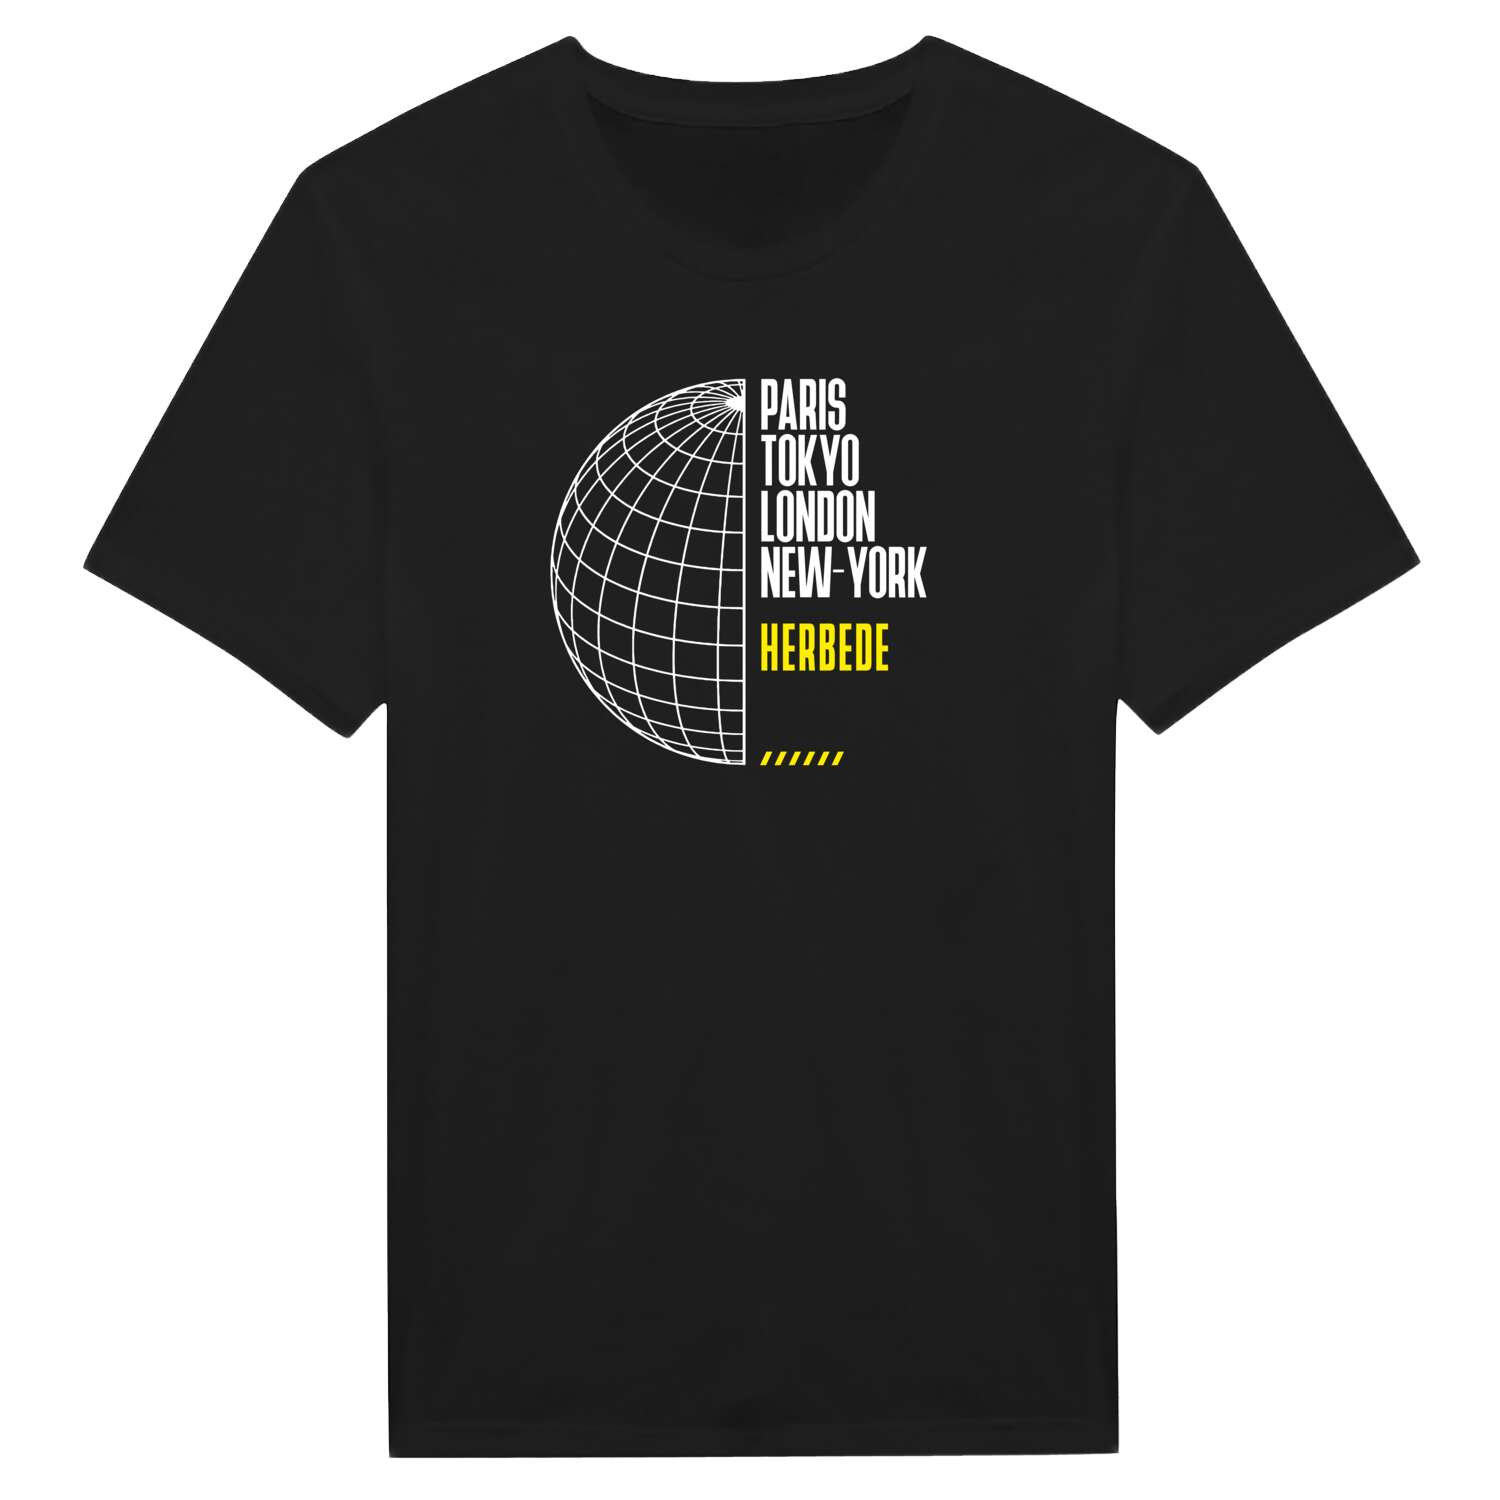 Herbede T-Shirt »Paris Tokyo London«